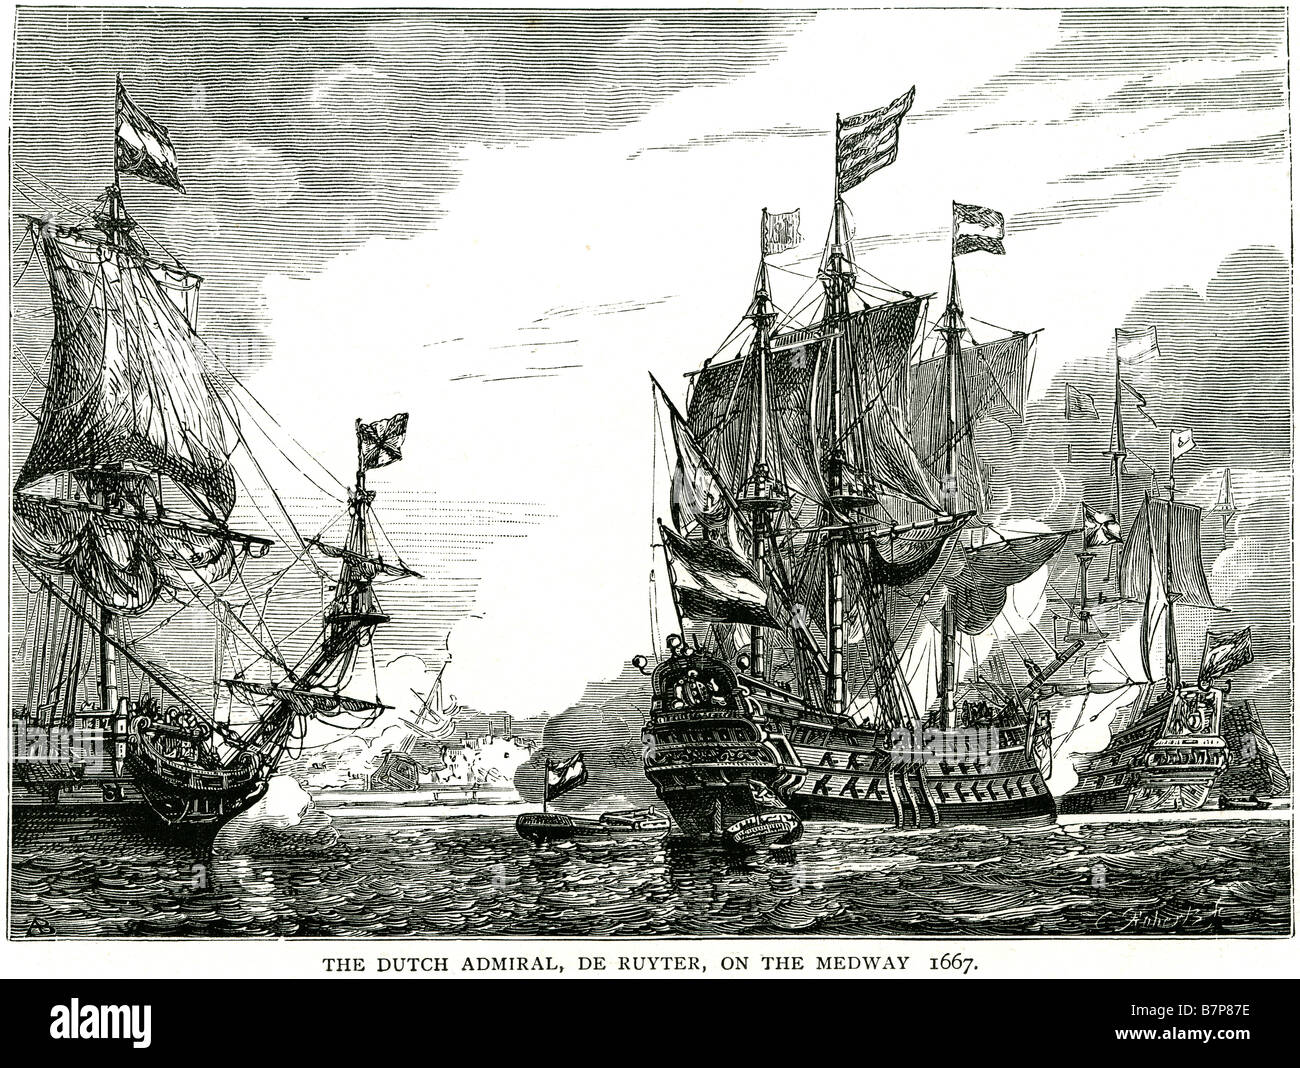 L'amiral hollandais De Ruyter Medway Chatham 1667 Bataille navale plus importante flotte de navires navires anglais Eau de mer Bateau à voile faire na marine Banque D'Images